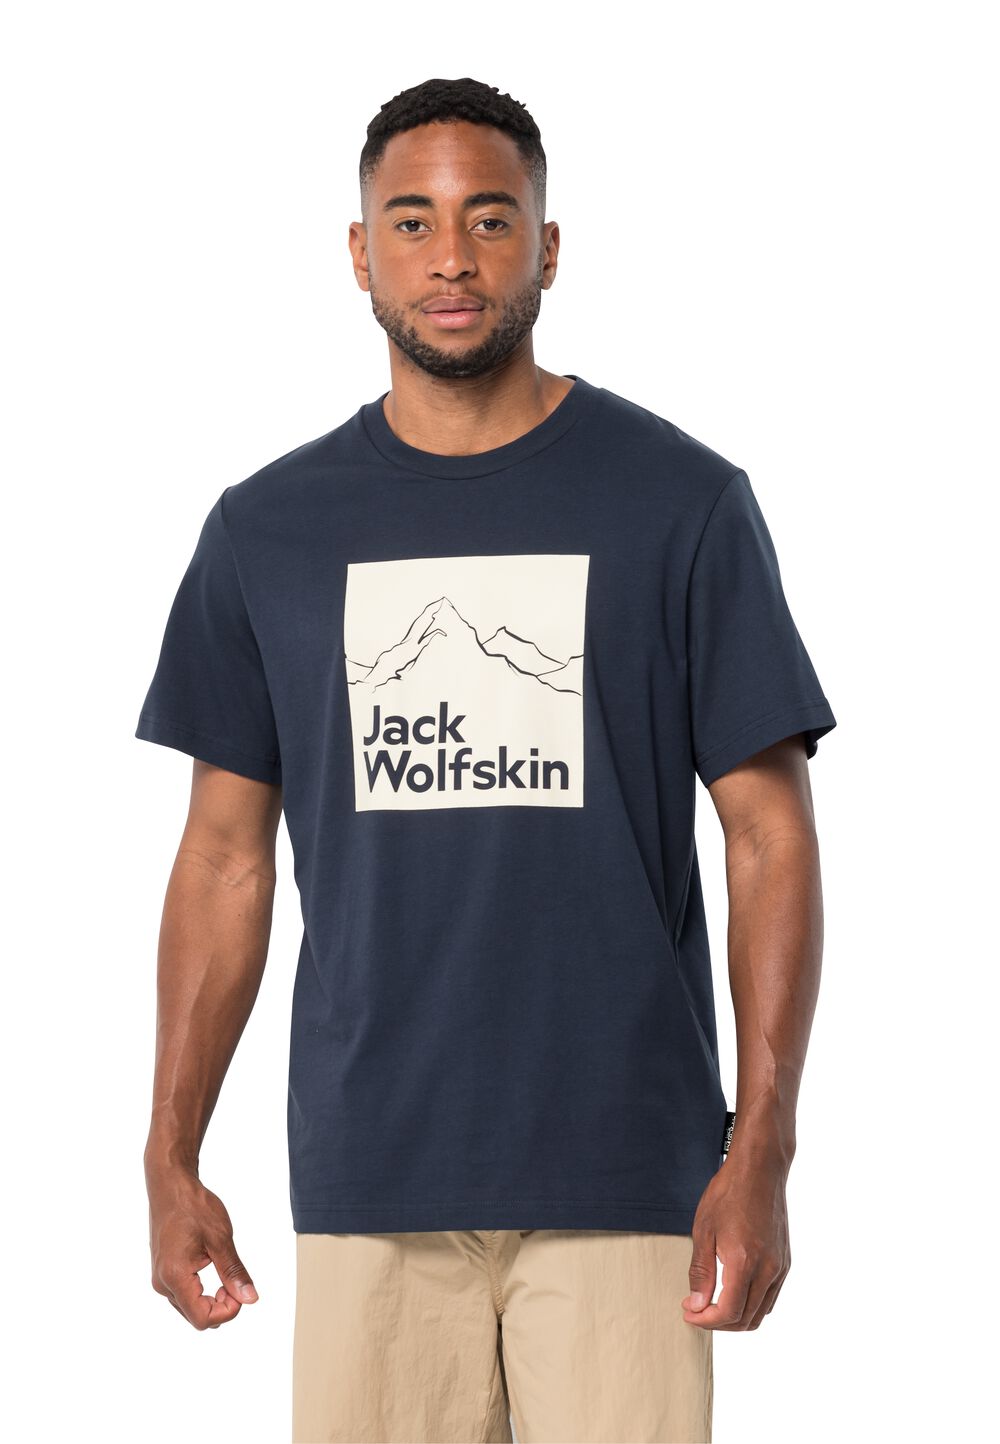 Jack Wolfskin Herren T-shirt aus Bio-Baumwolle Brand T-Shirt Men L blau night blue von Jack Wolfskin